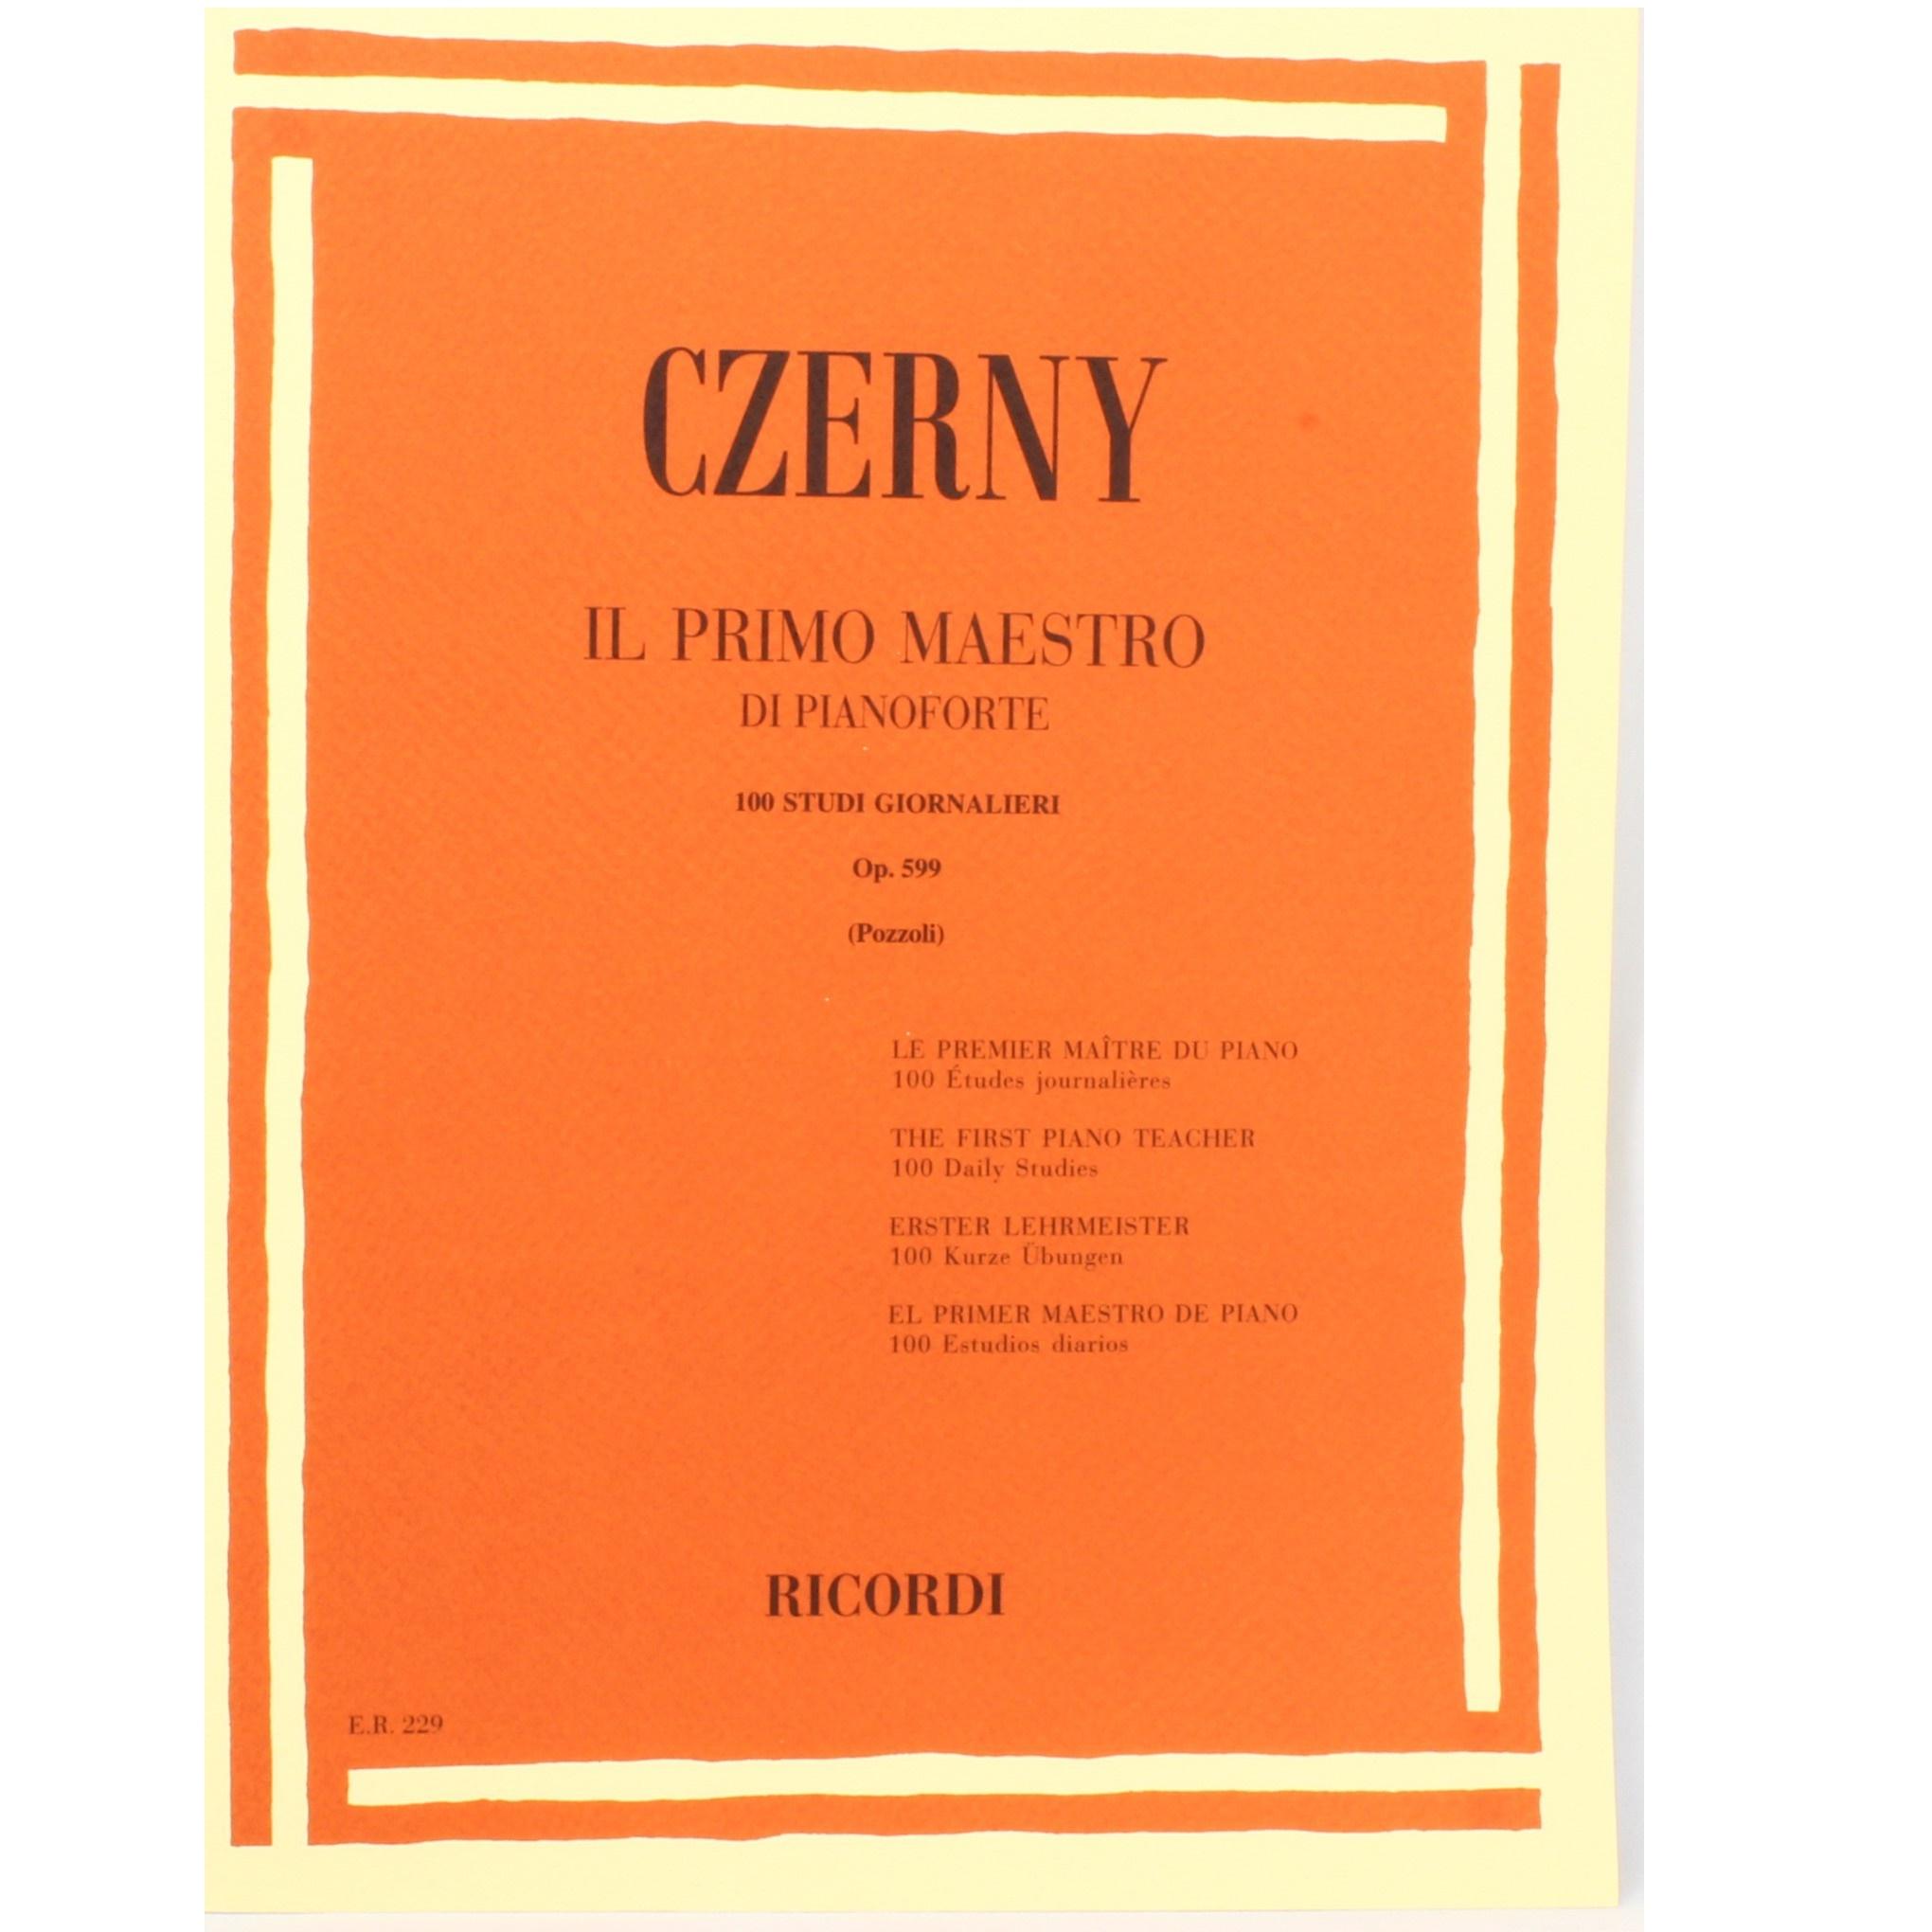 Czerny IL PRIMO MAESTRO DI PIANOFORTE 100 studi giornalieri Op. 599 (Pozzoli) - Ricordi